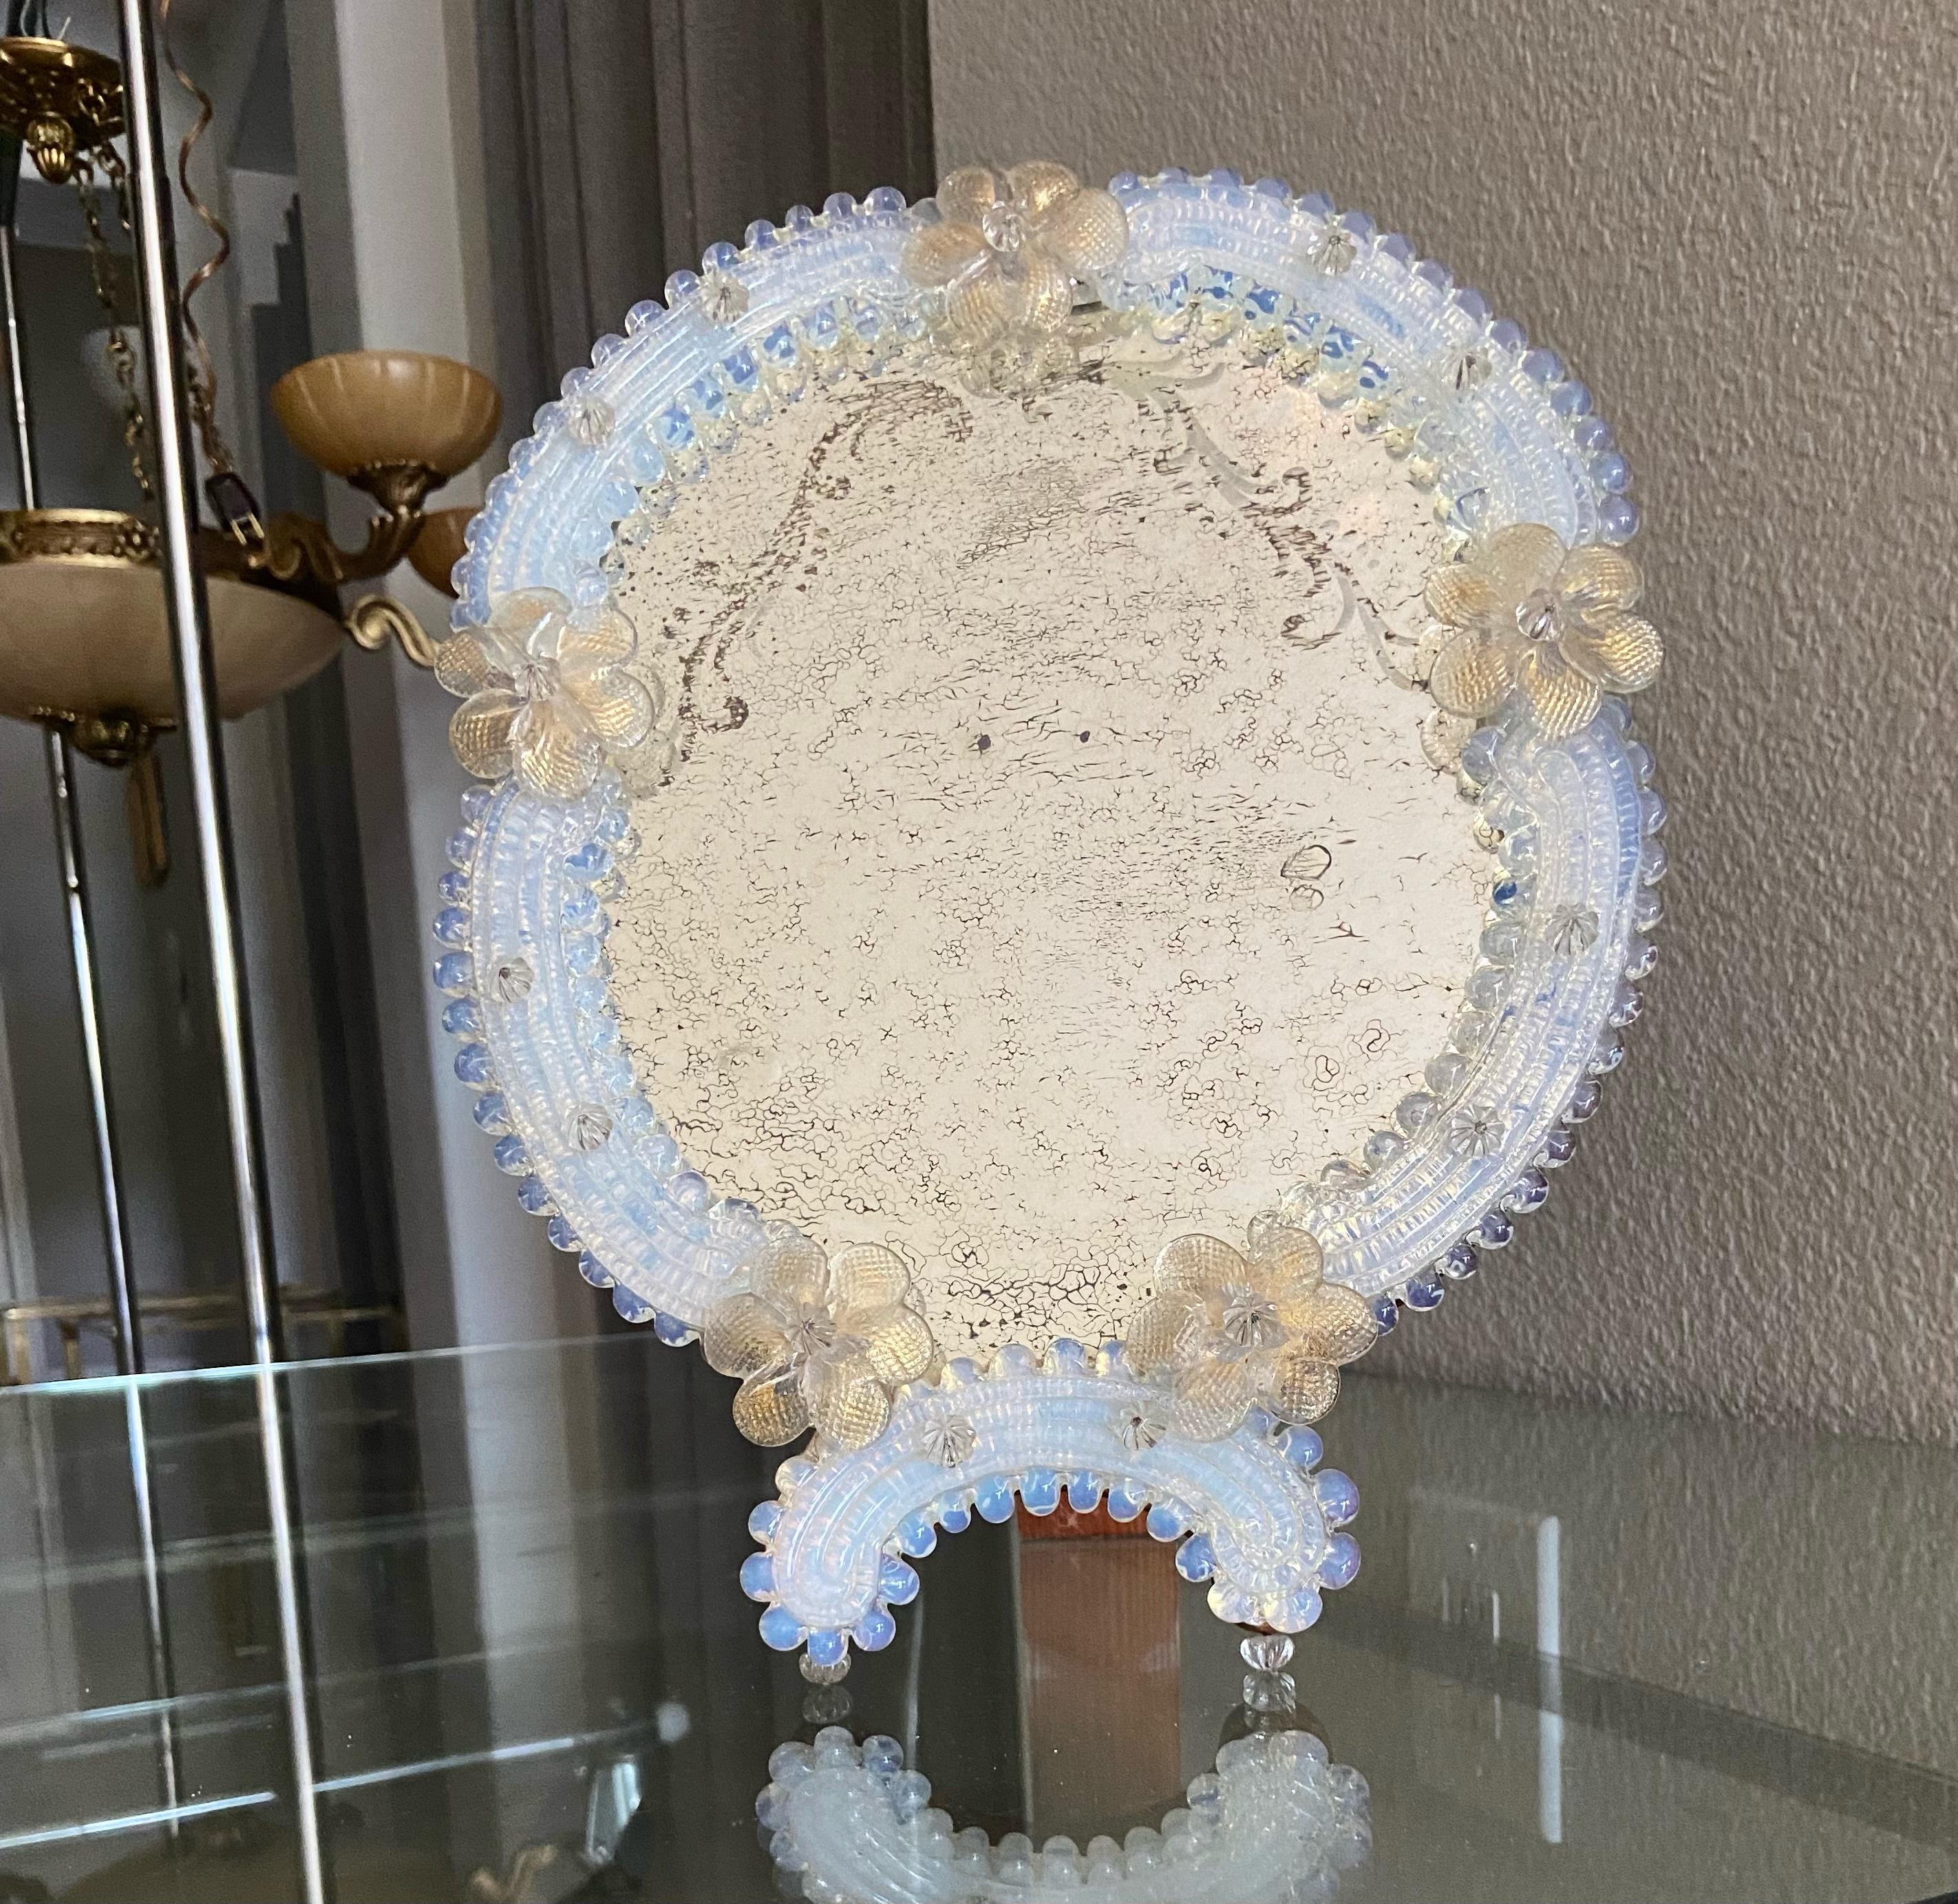 Miroir de table de Murano avec des fleurs transparentes et dorées, et des pièces de verre de couleur opalescente entourant le miroir. Le verre du miroir présente une gravure décorative et une finition antiquaire. Le pied et le support sont en bois.